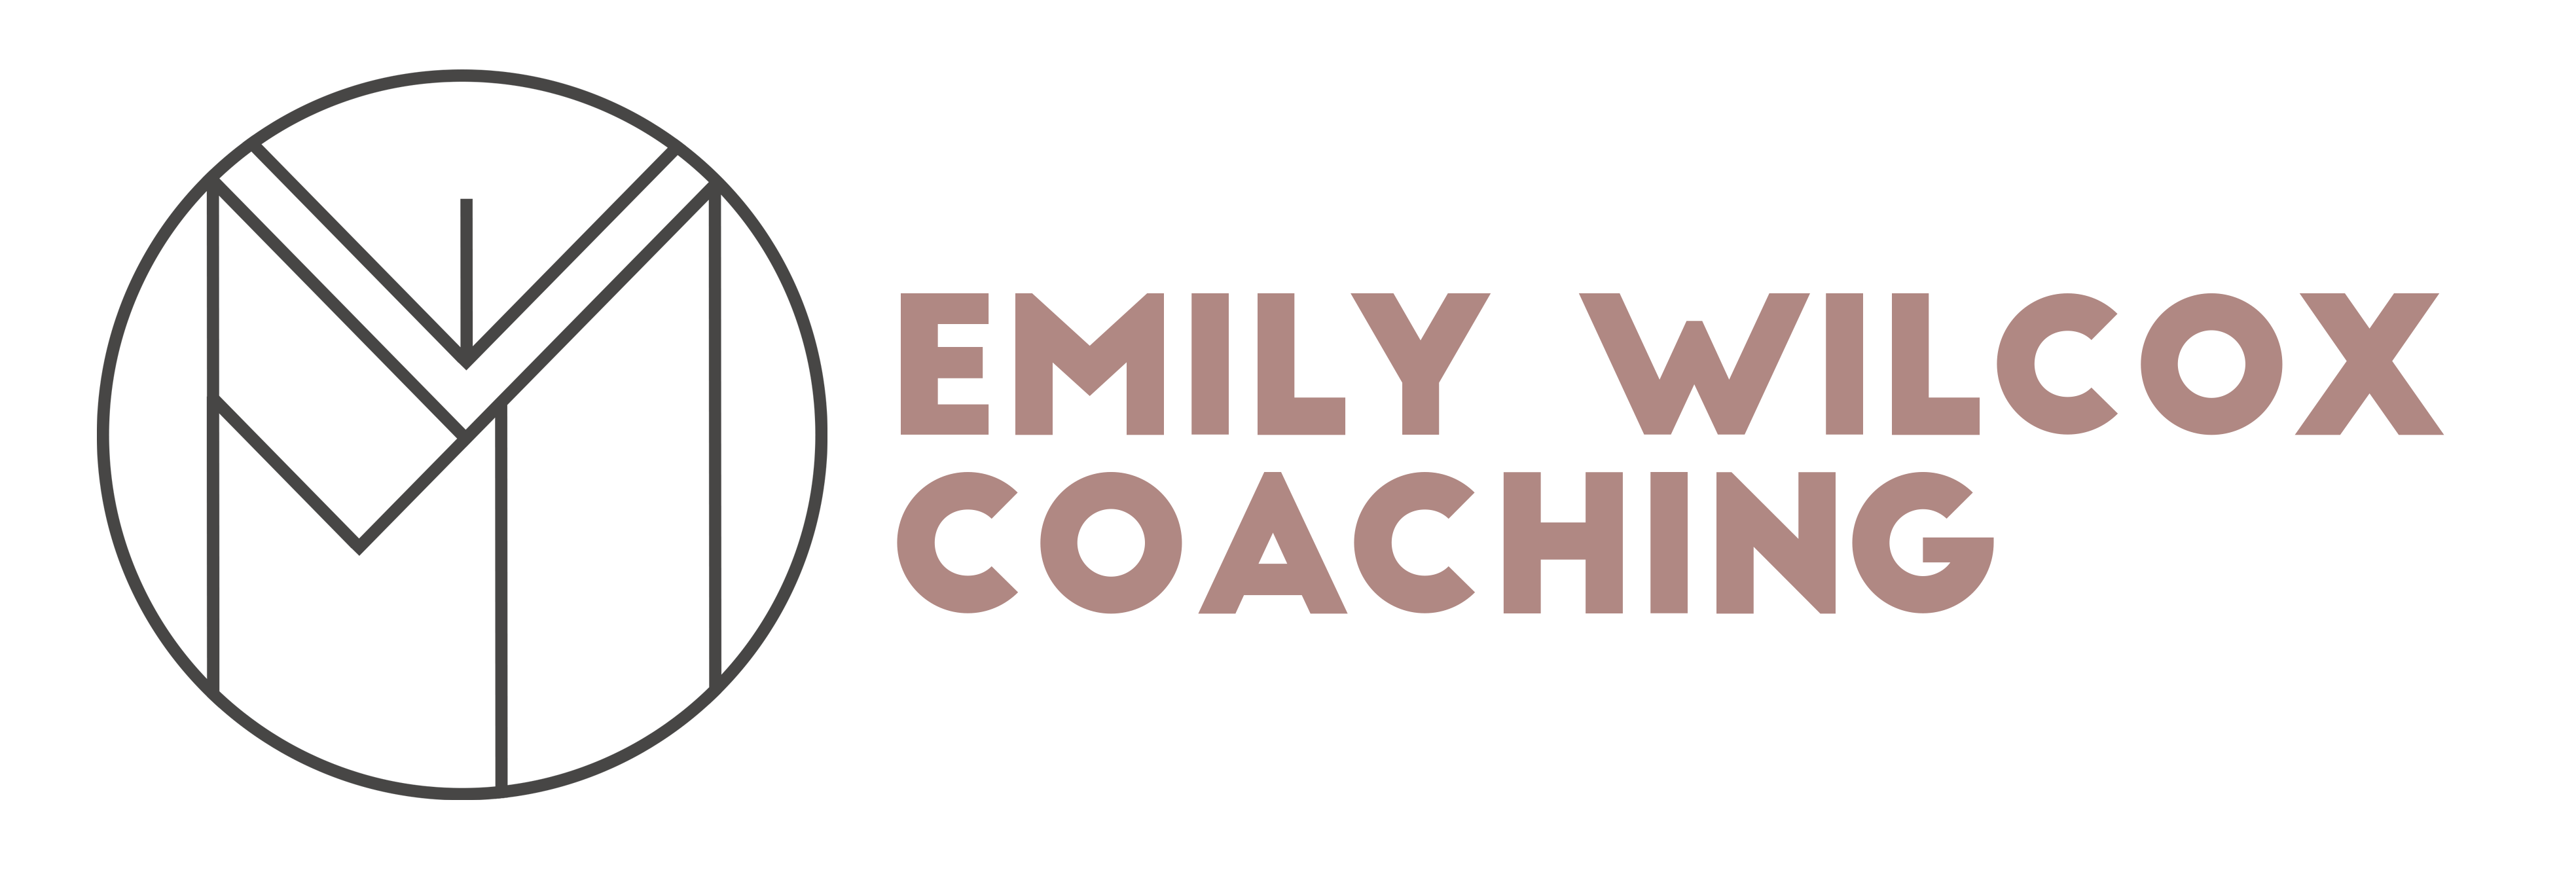 Emily Wilcox Coaching logo